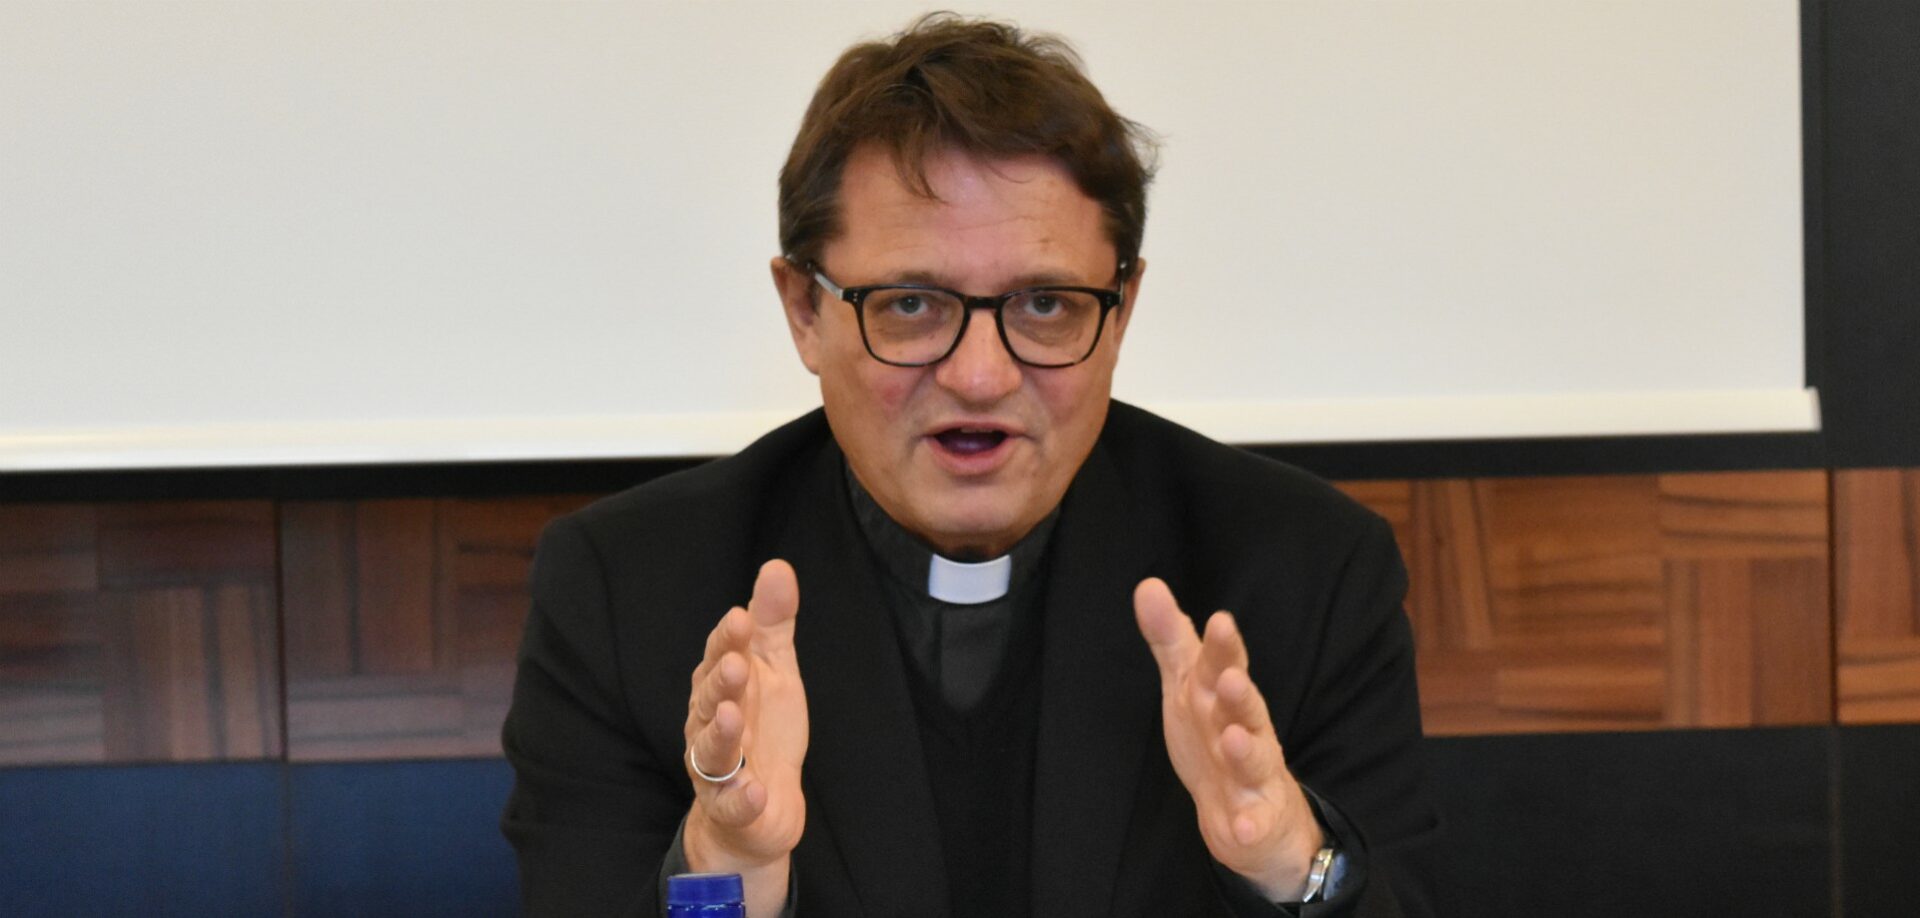 Mgr Felix Gmür, président de la Conférence des évêques suisses, | © Jacques Berset  